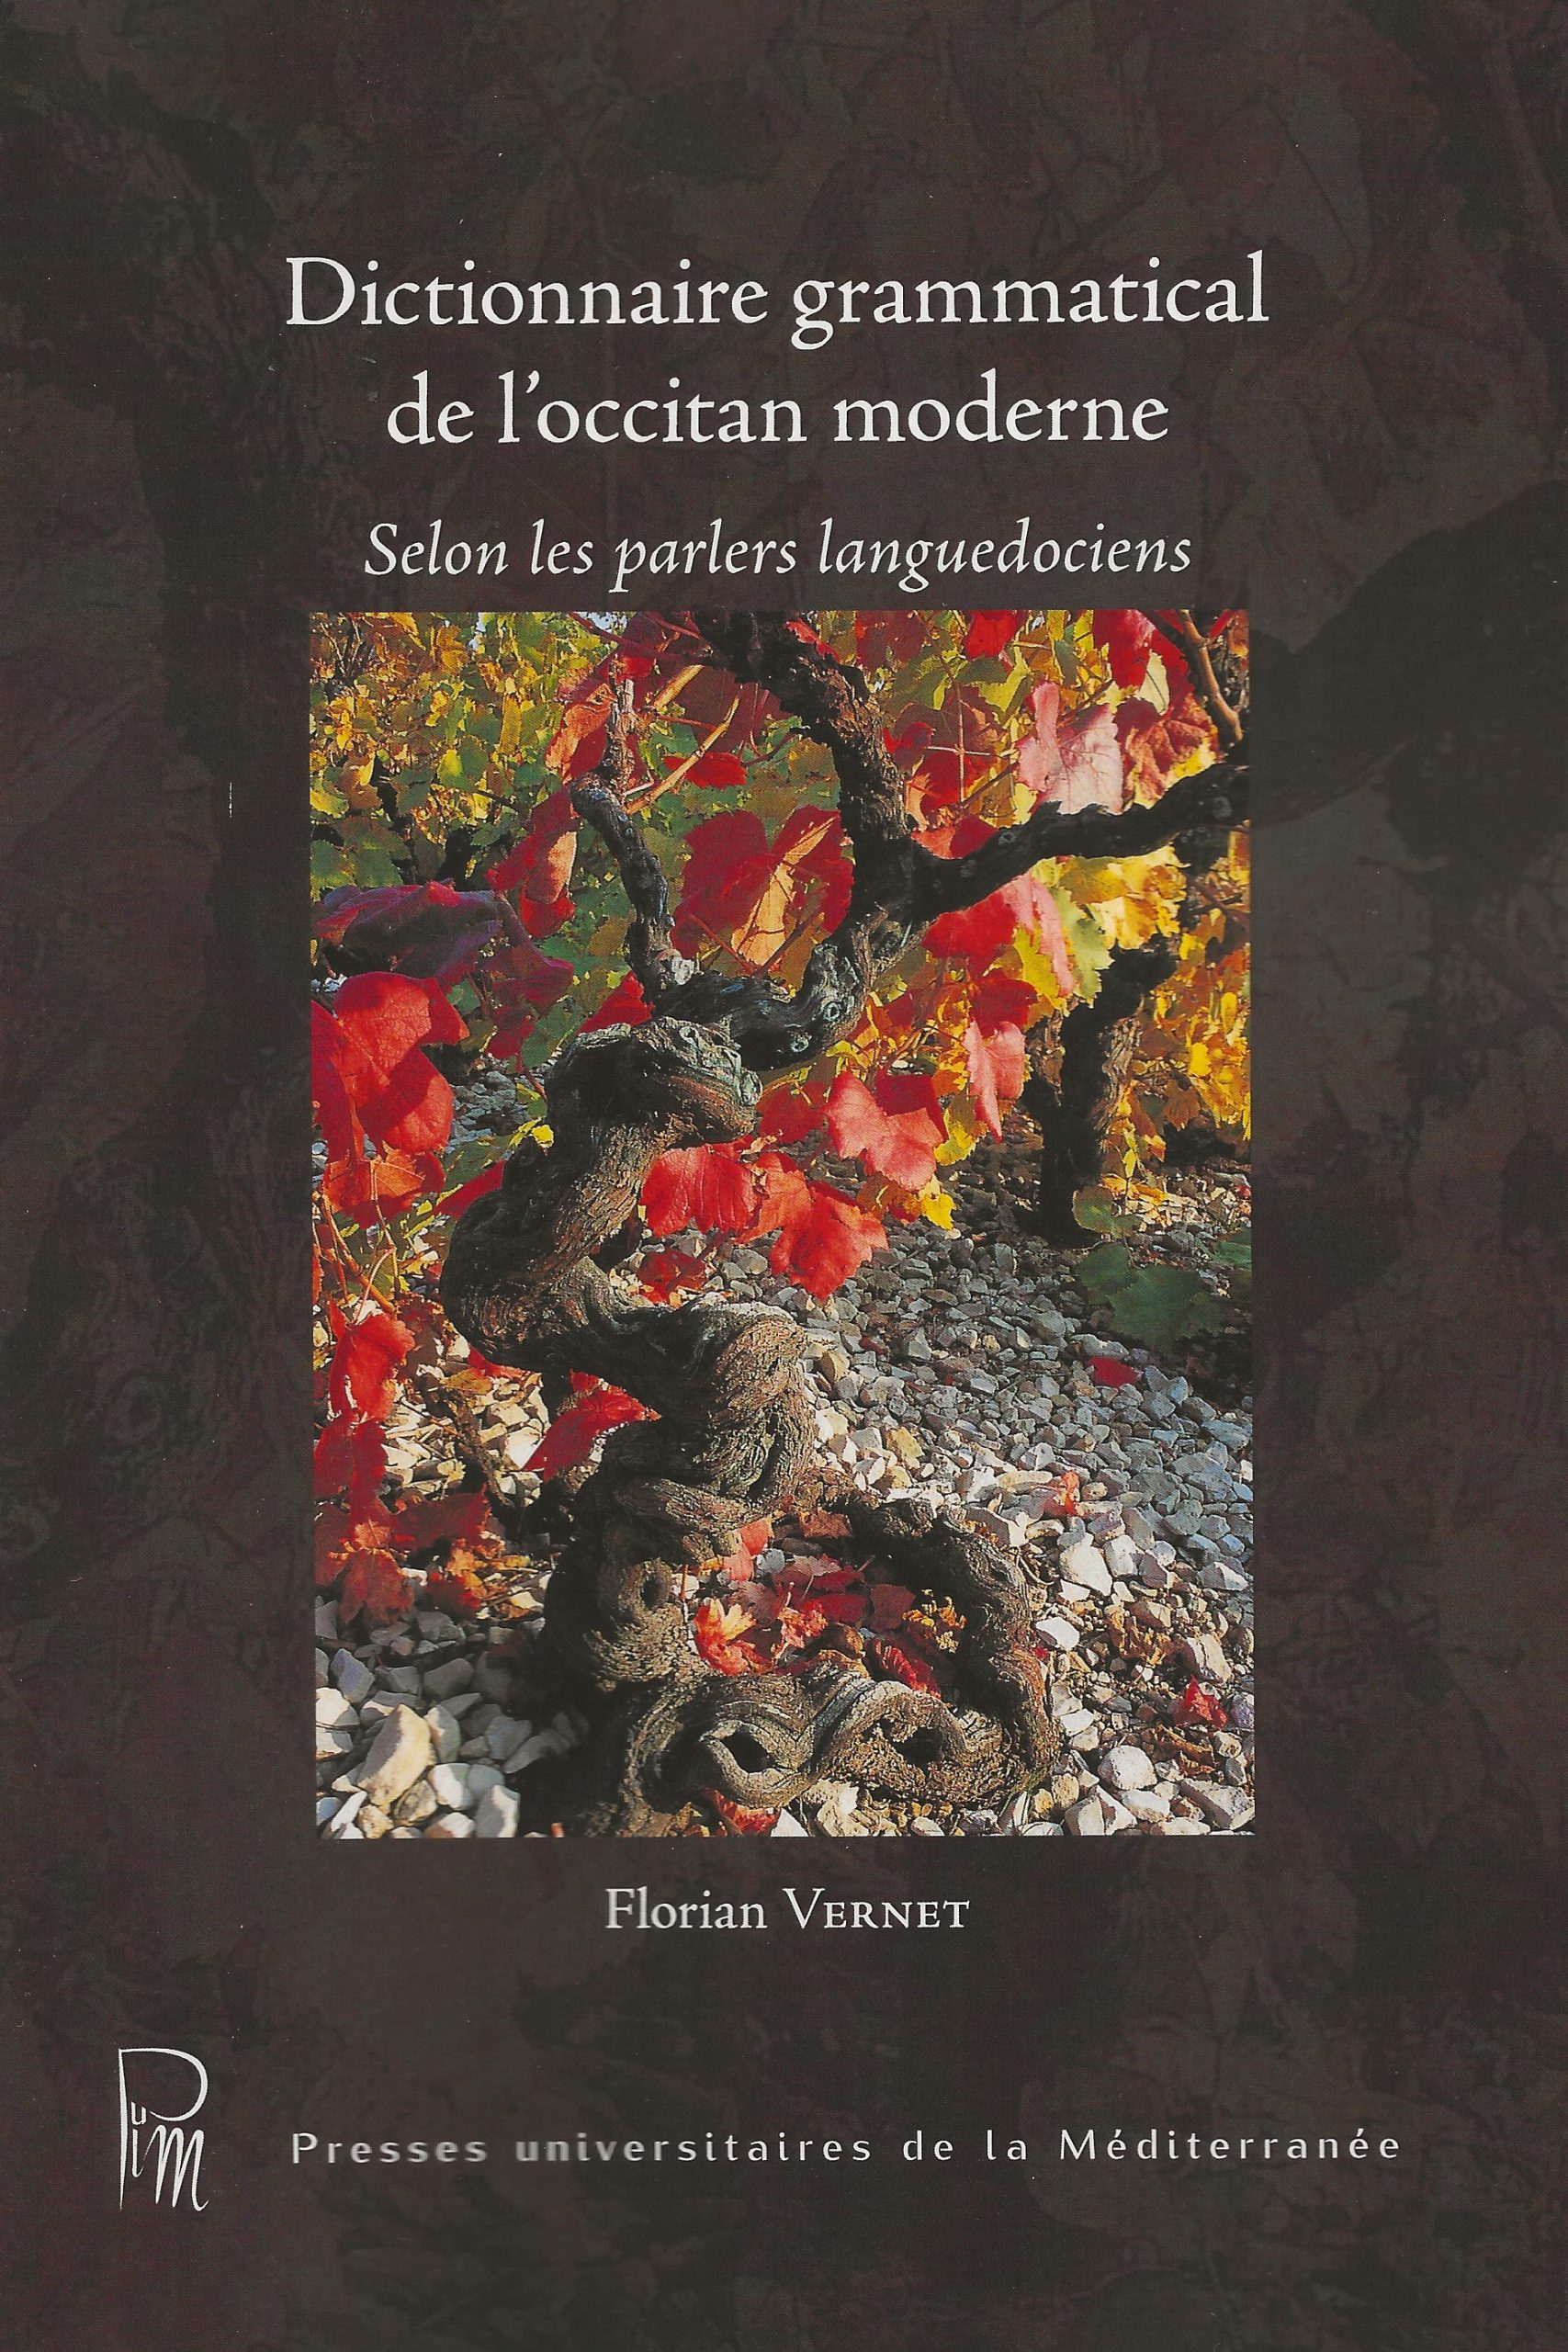 Couverture de Dictionnaire grammatical de l'occitan moderne selon les parlers languedociens (D)